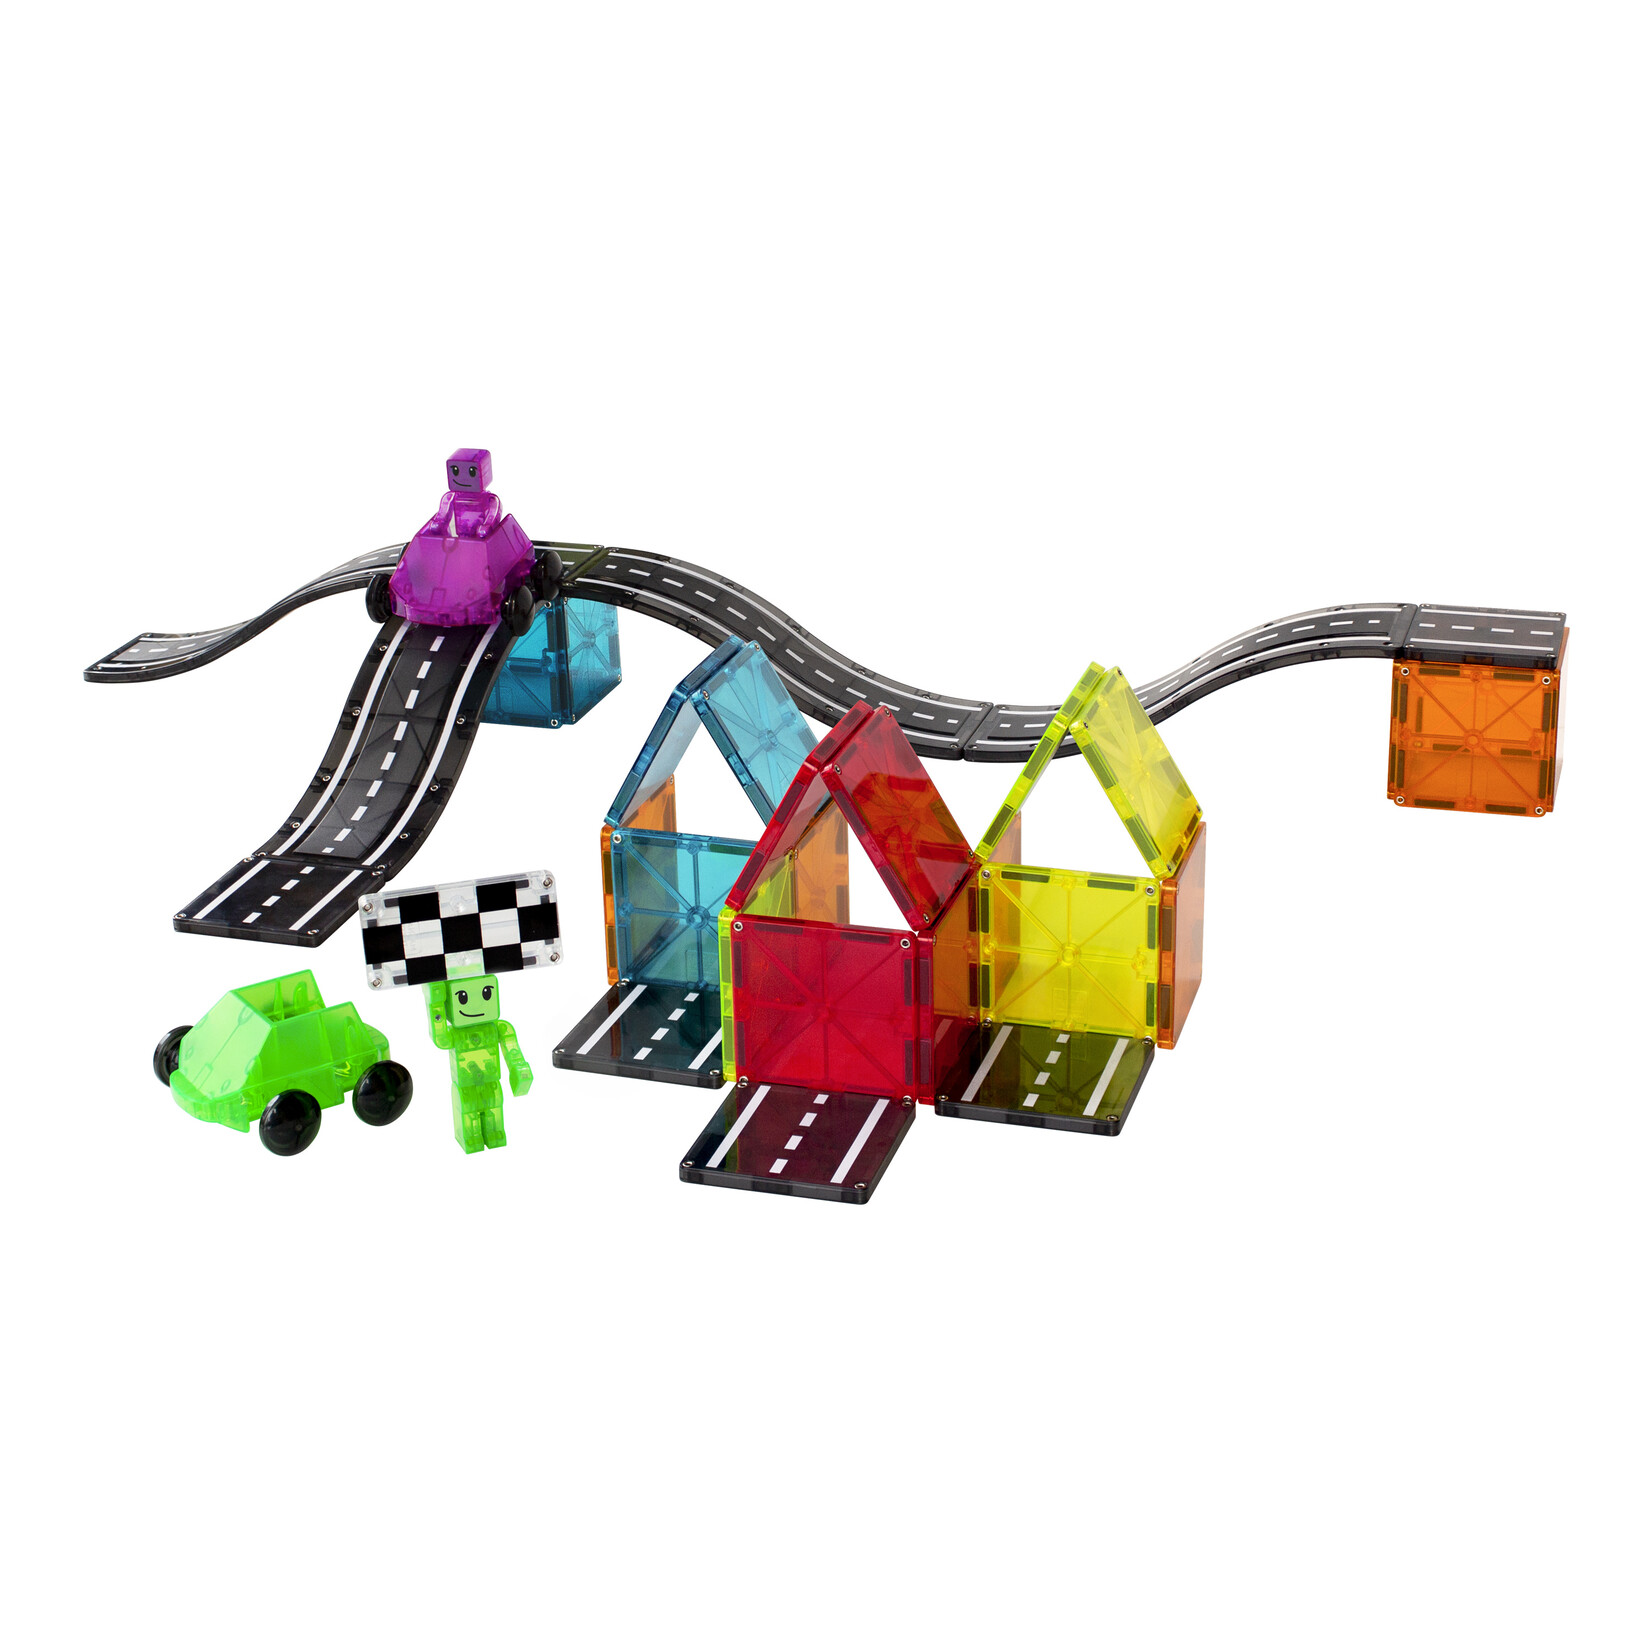 Magna-Tiles Downhill Duo 40-delige magnetische constructieset, het originele merk voor magnetisch speelgoed